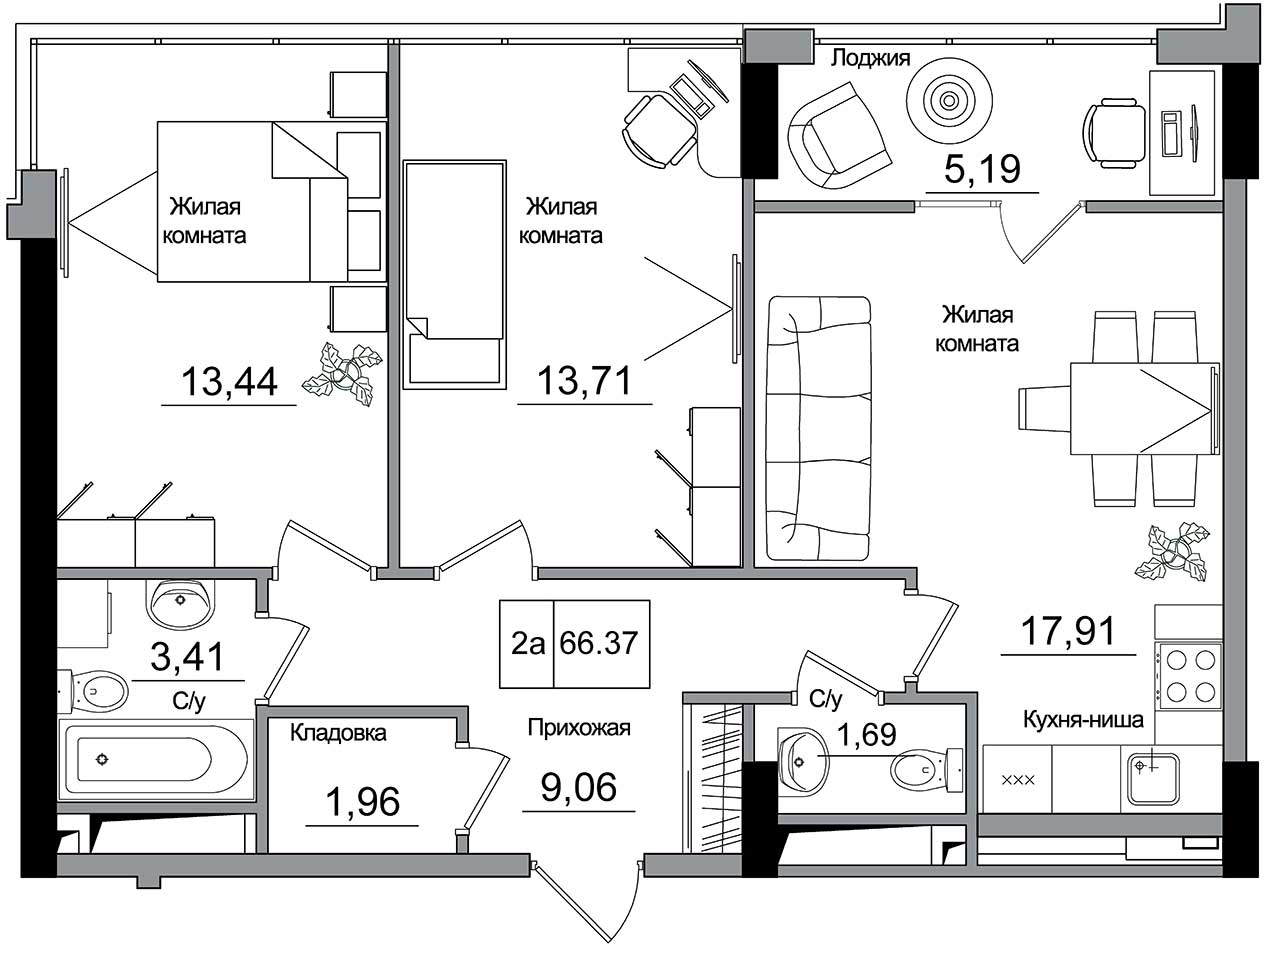 Планировка 2-к квартира площей 66.37м2, AB-16-11/00006.